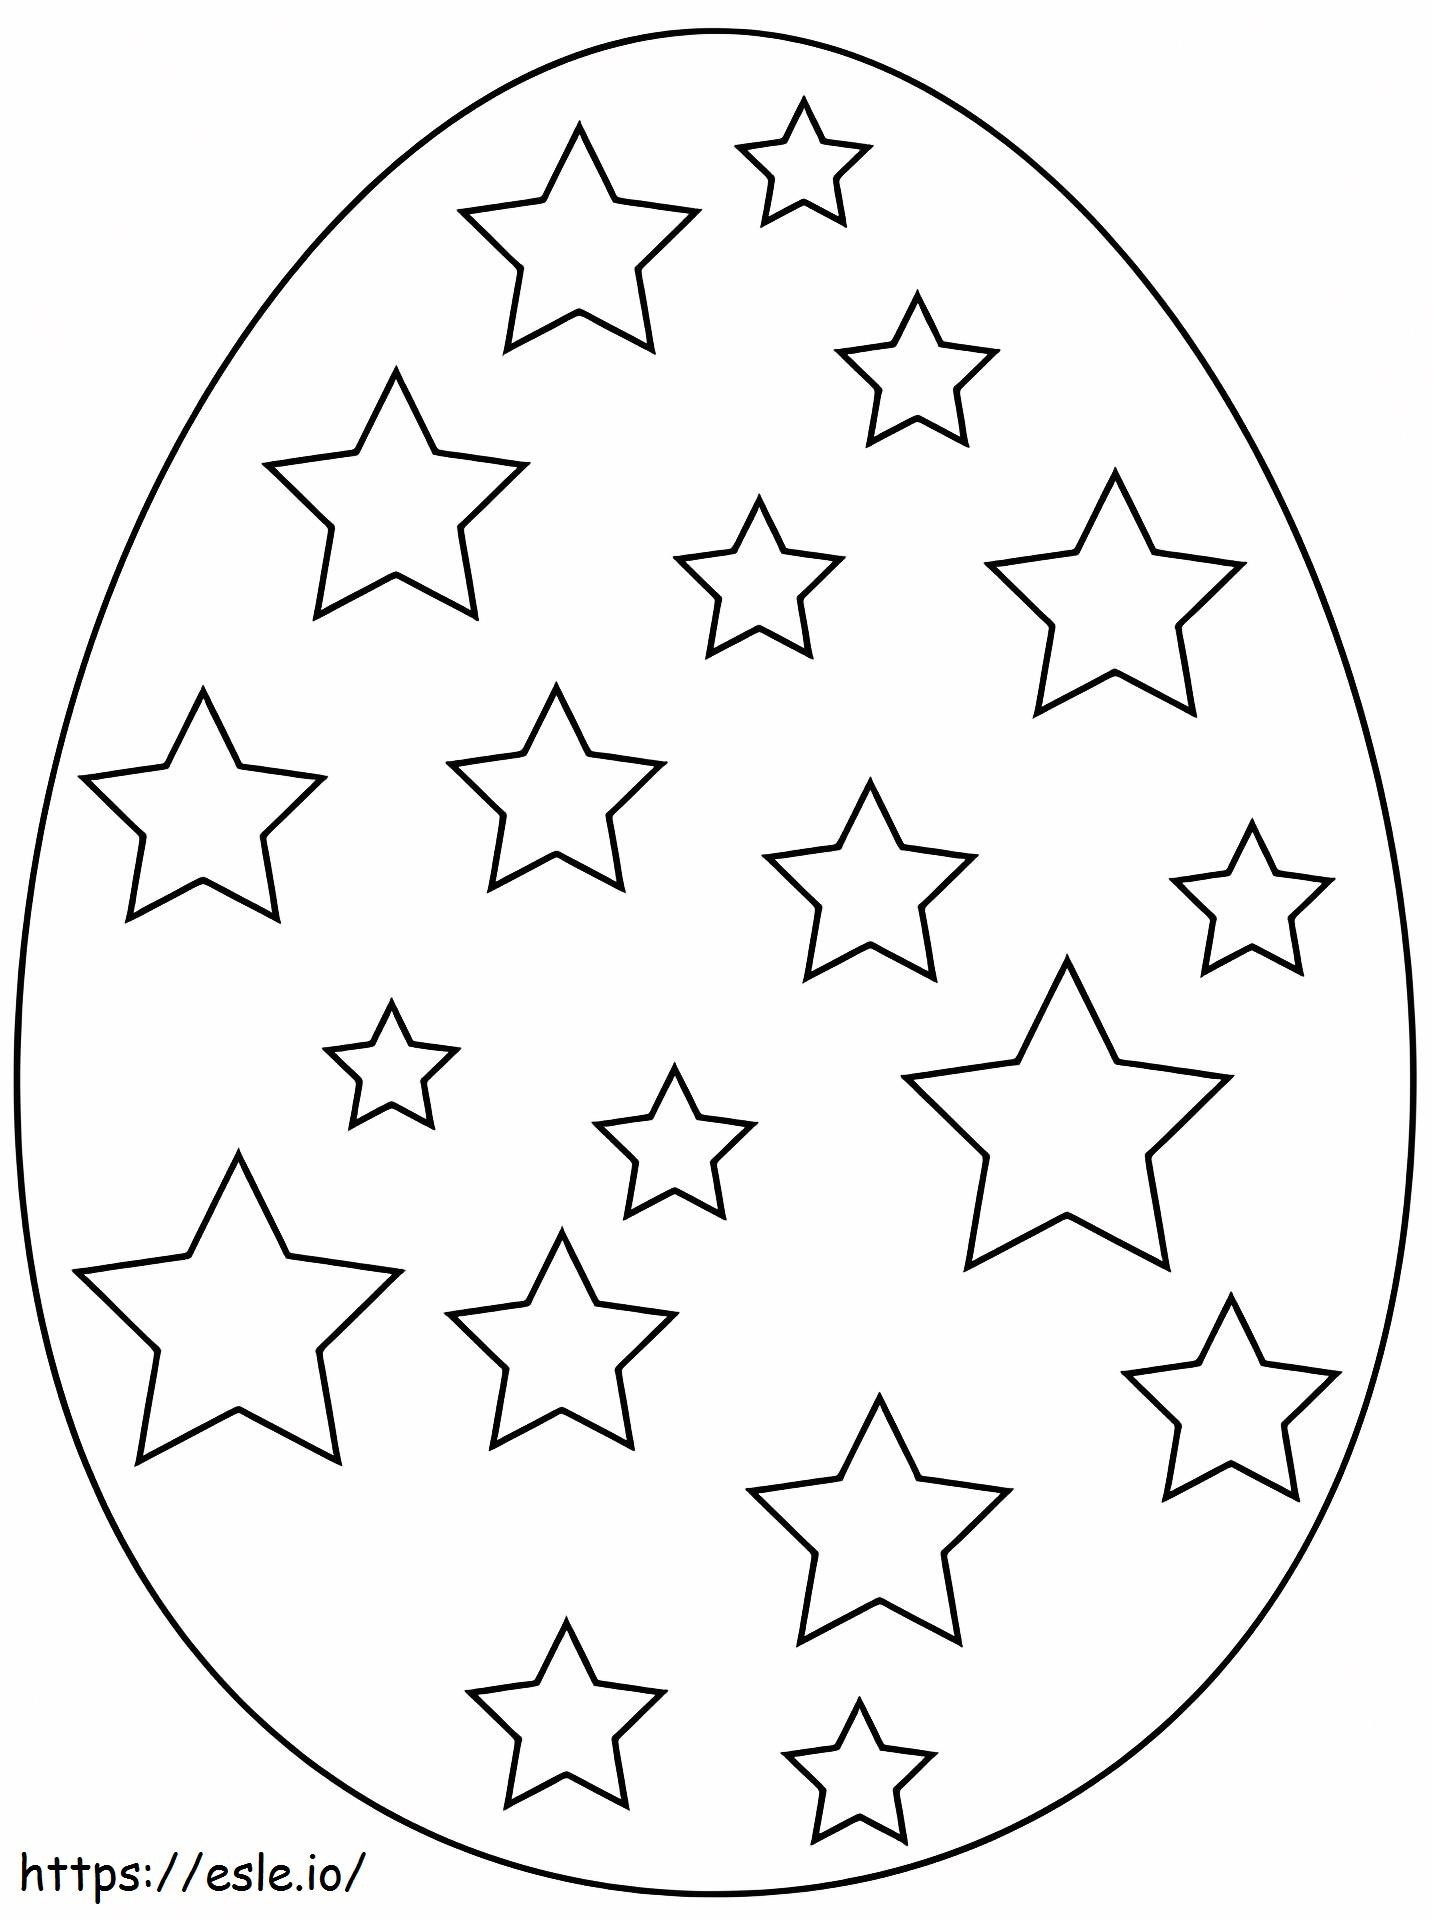 1527151141 Yıldızlı Paskalya Yumurtası A4 boyama